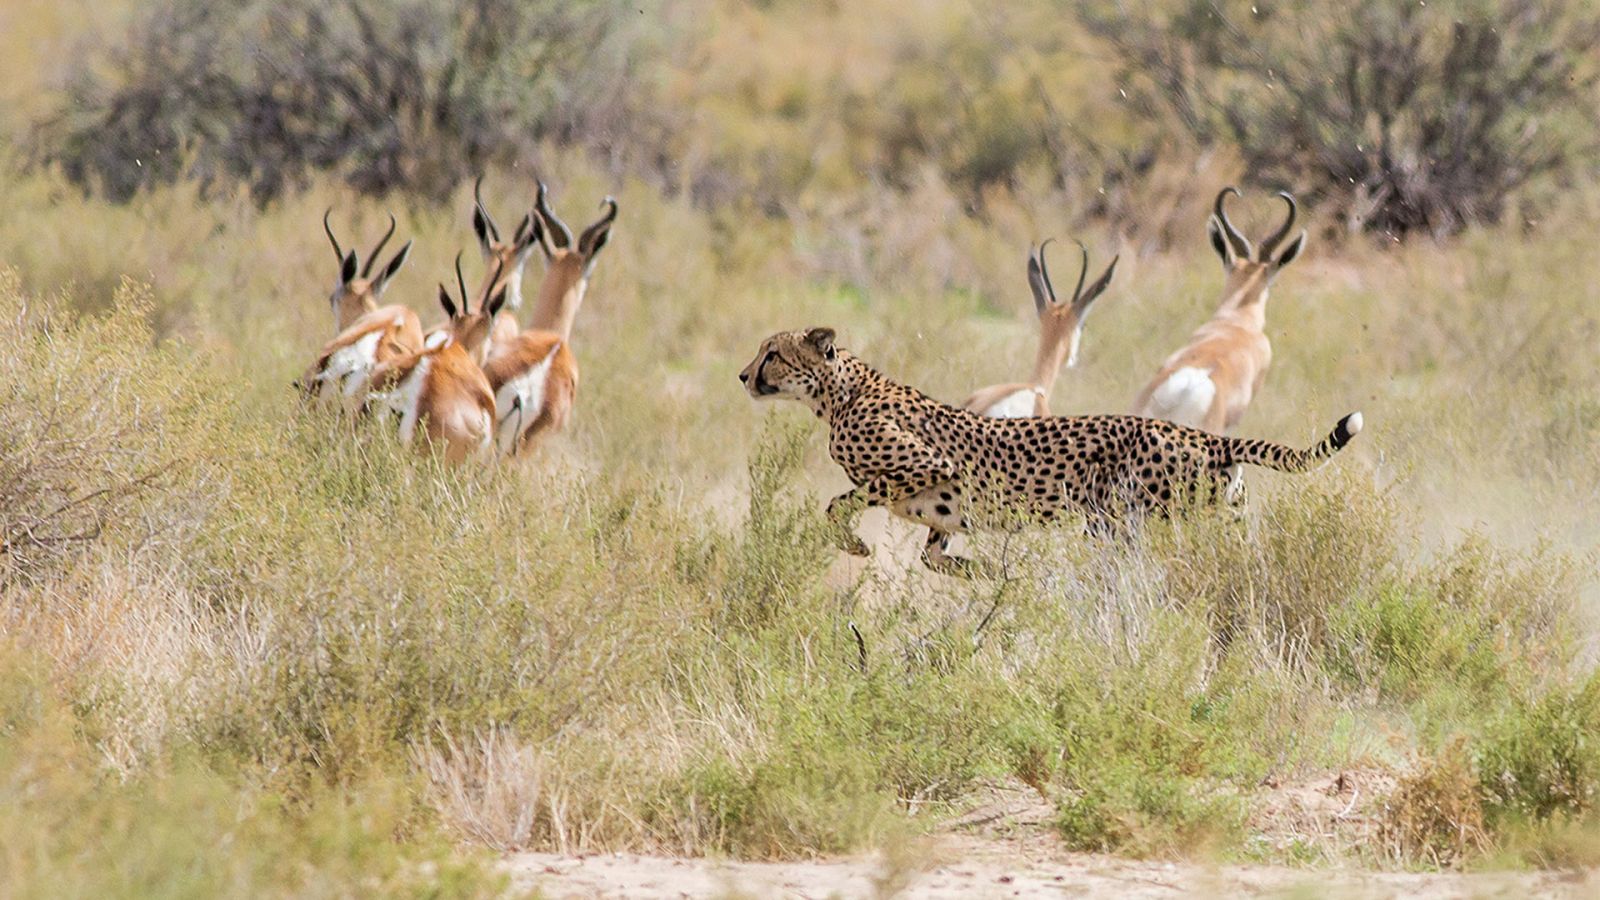 Grandes documentales - Presa contra depredadores: La supervivencia en el Serengueti - RTVE.es